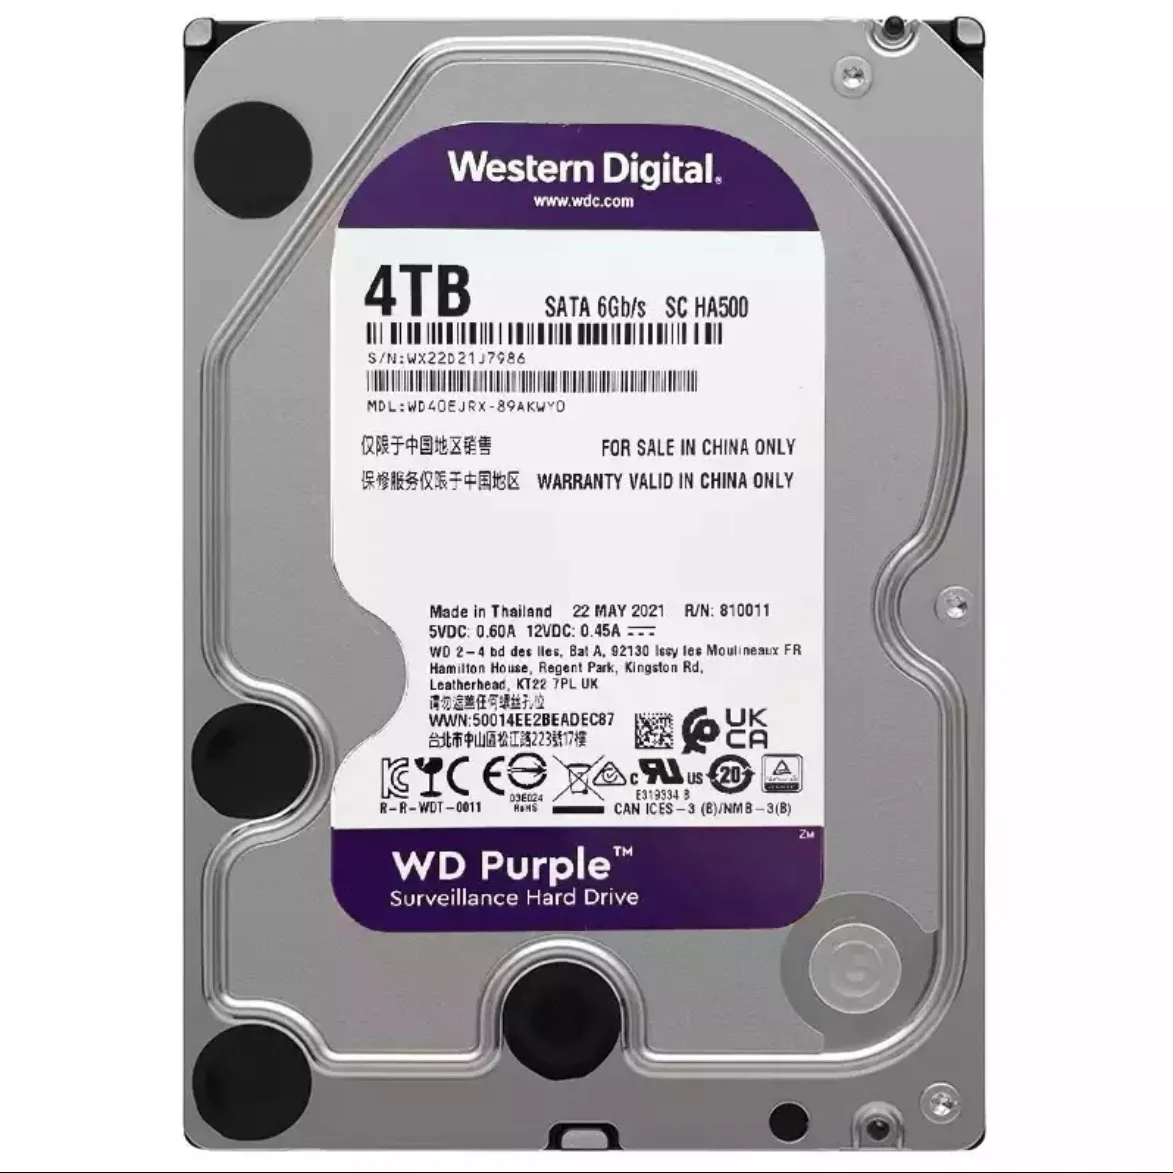 Wd40purz 4tb Hdd Purple Surveillance Internal Hard Disk Drive - 5400  Rpm,Sata 6 Gb/s,256mb Cache,Digital Western Seegate - Buy Hdd Wd40purx  Wd81purx Wd80purz Wd81purx Wd82purx Wd81purx